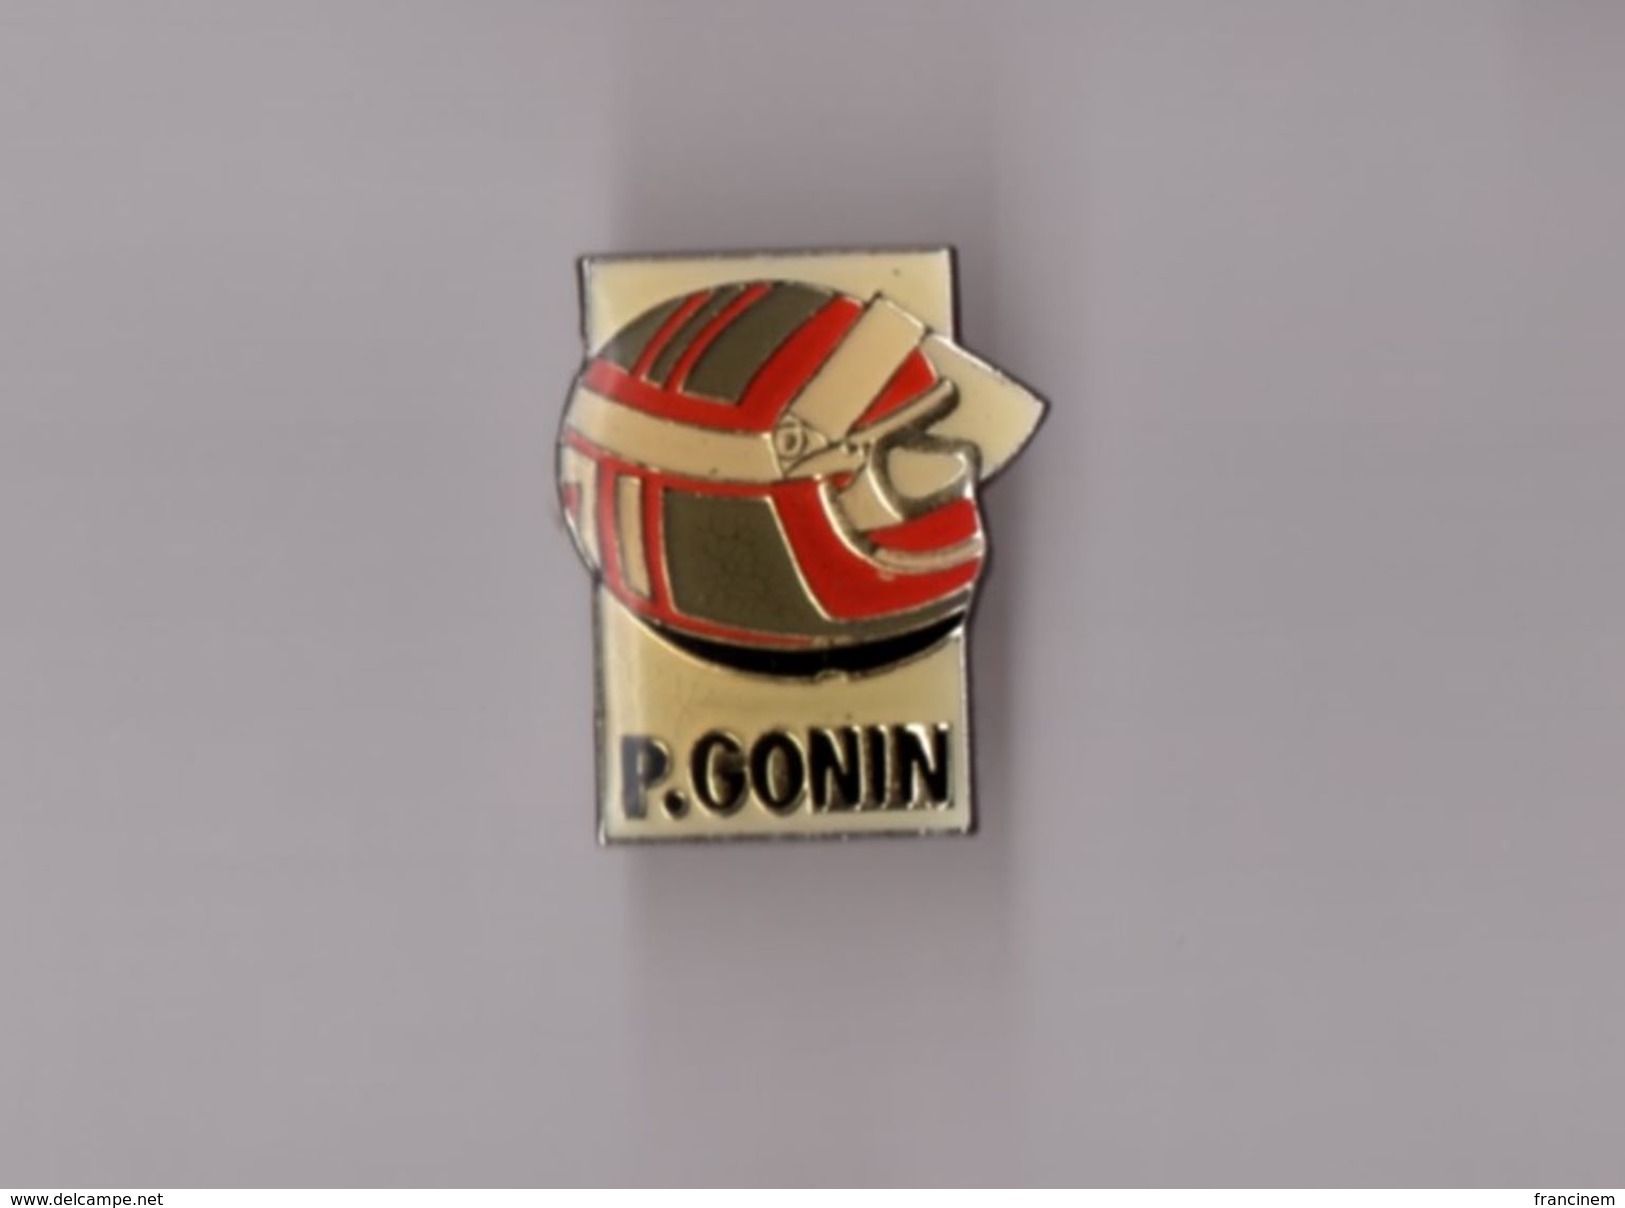 Pin's Formule 1 - Patrick Gonin - Autorennen - F1